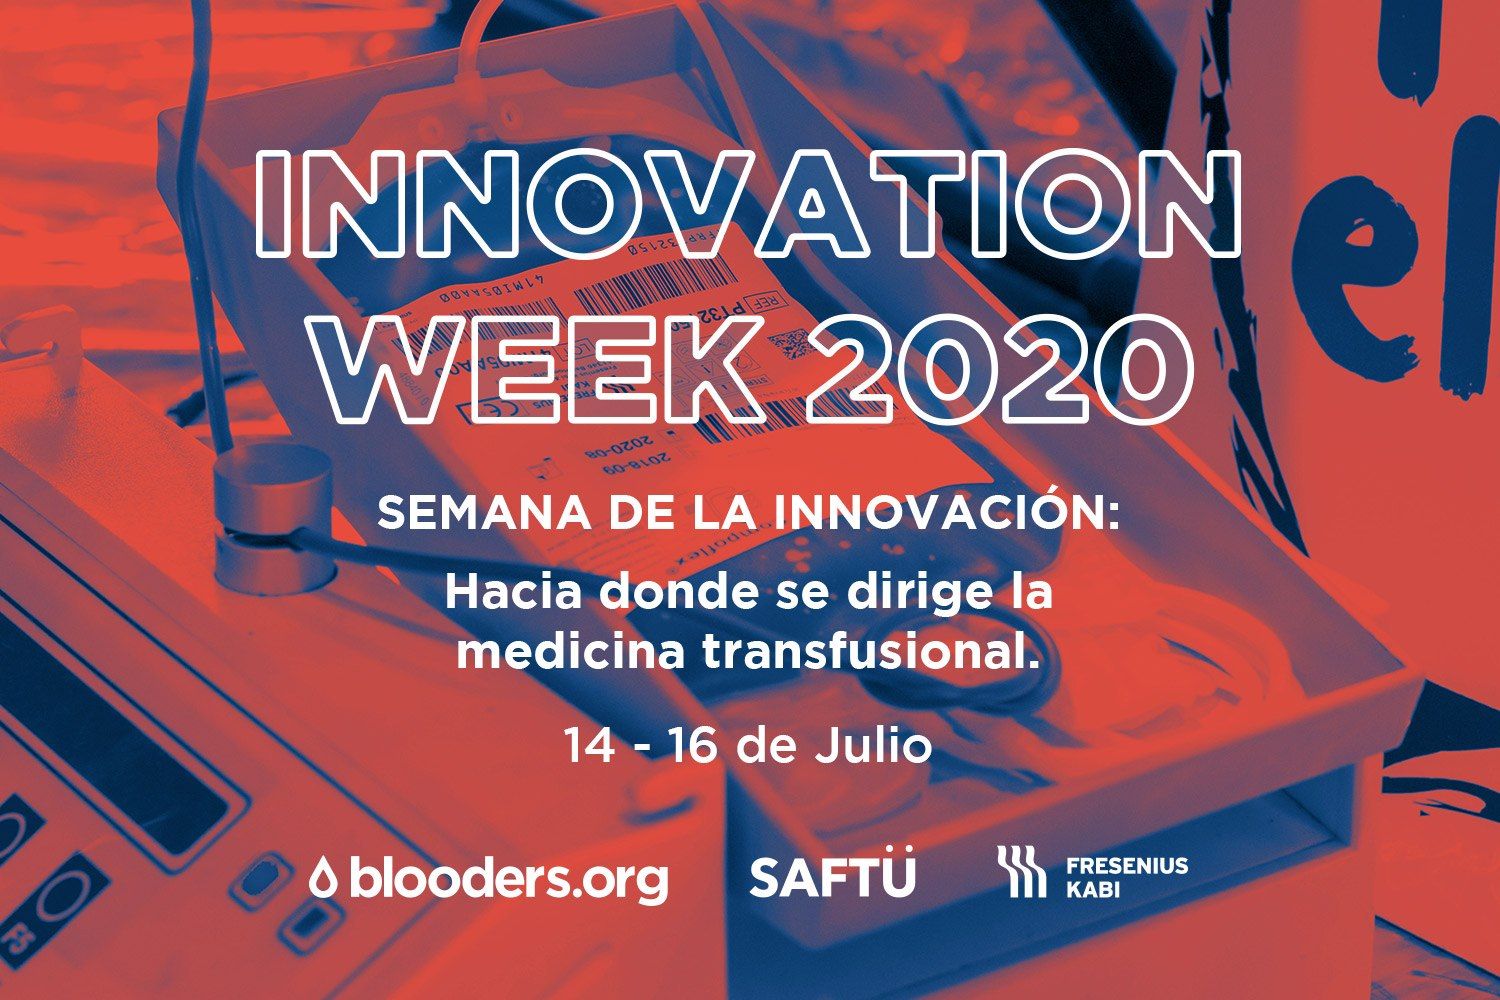 Innovation Week 2020 by Fresenius Kabi, Saftu y Blooders